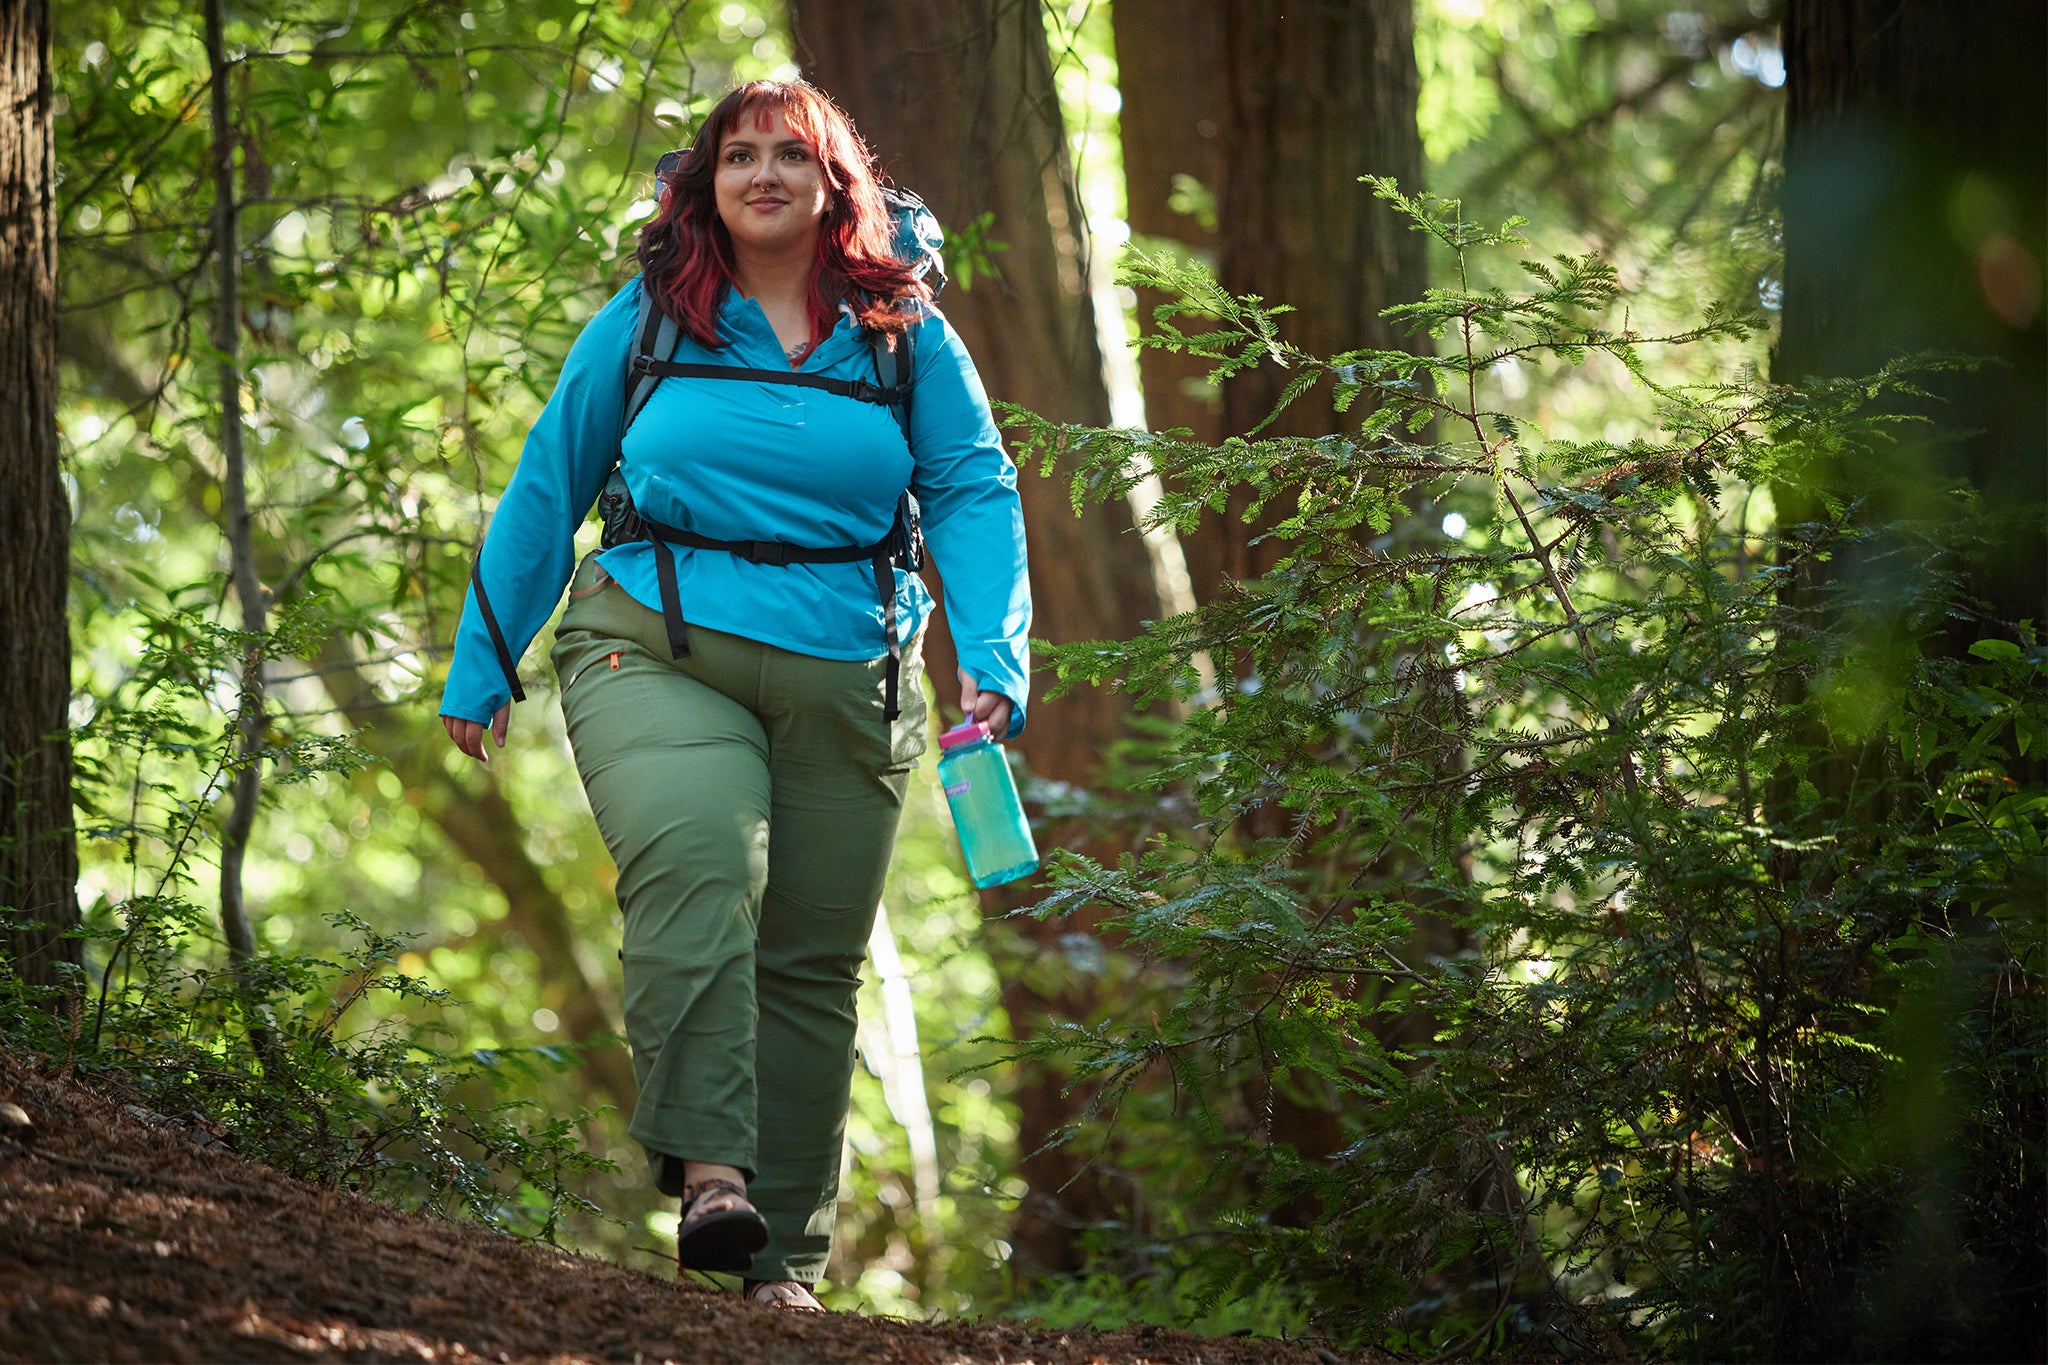 Pants, Pants Revolution: Alpine Parrot Launches Plus-Size Hiking